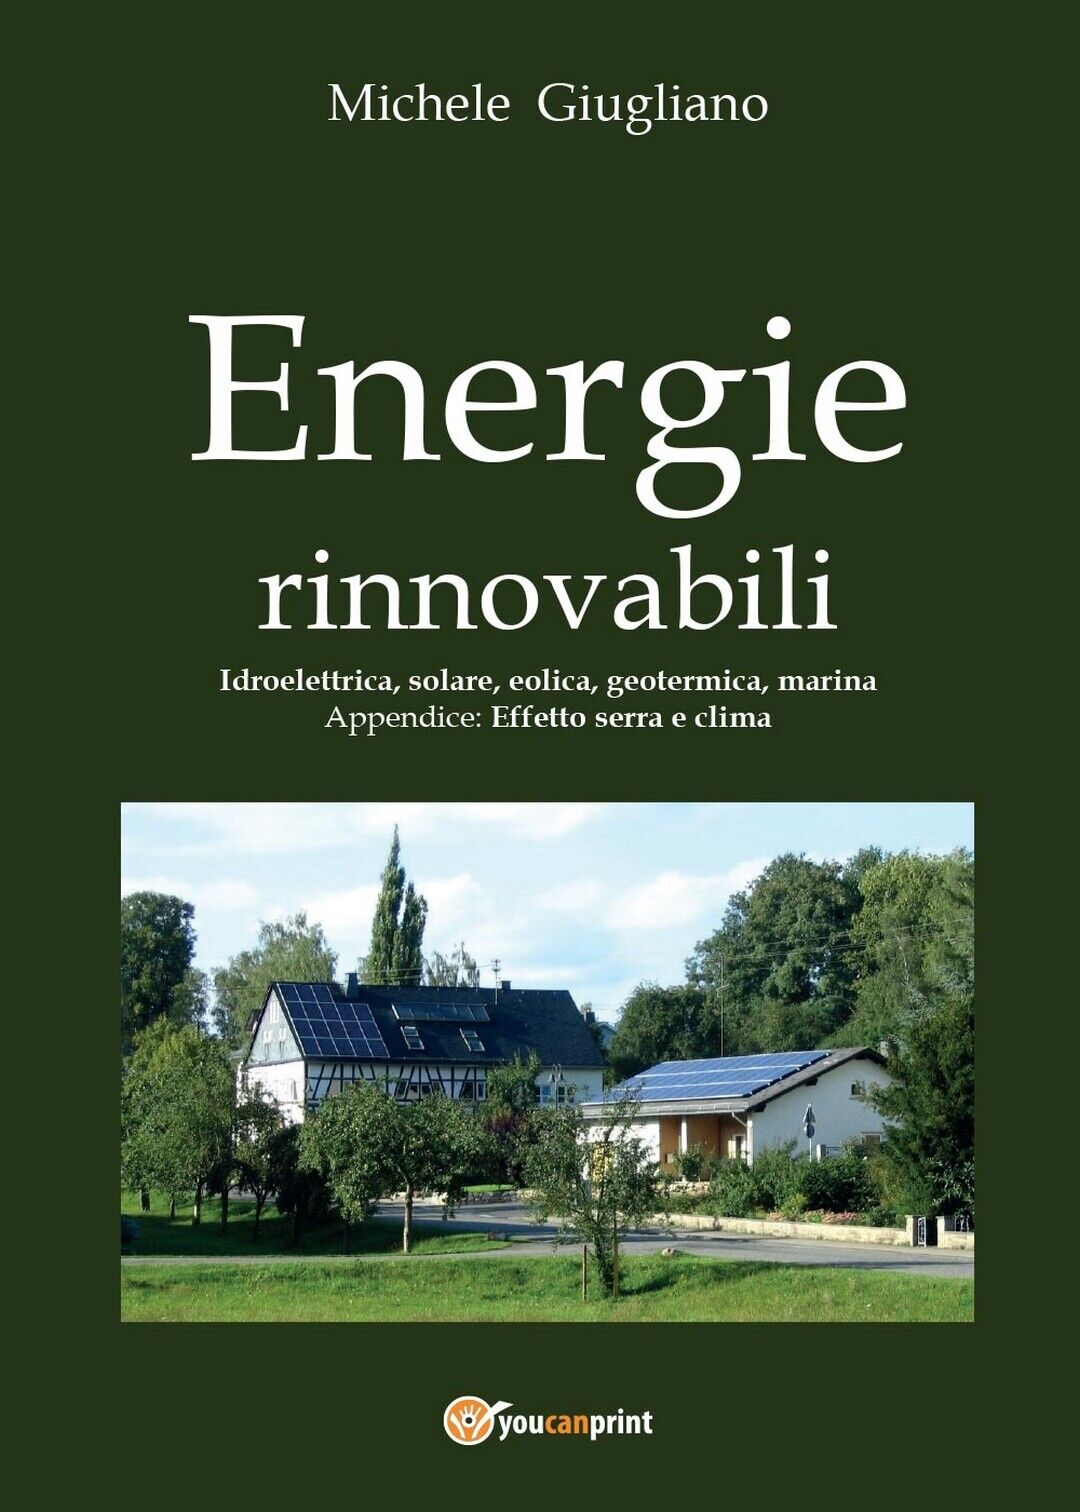 Energie rinnovabili  di Michele Giugliano,  2016,  Youcanprint libro usato